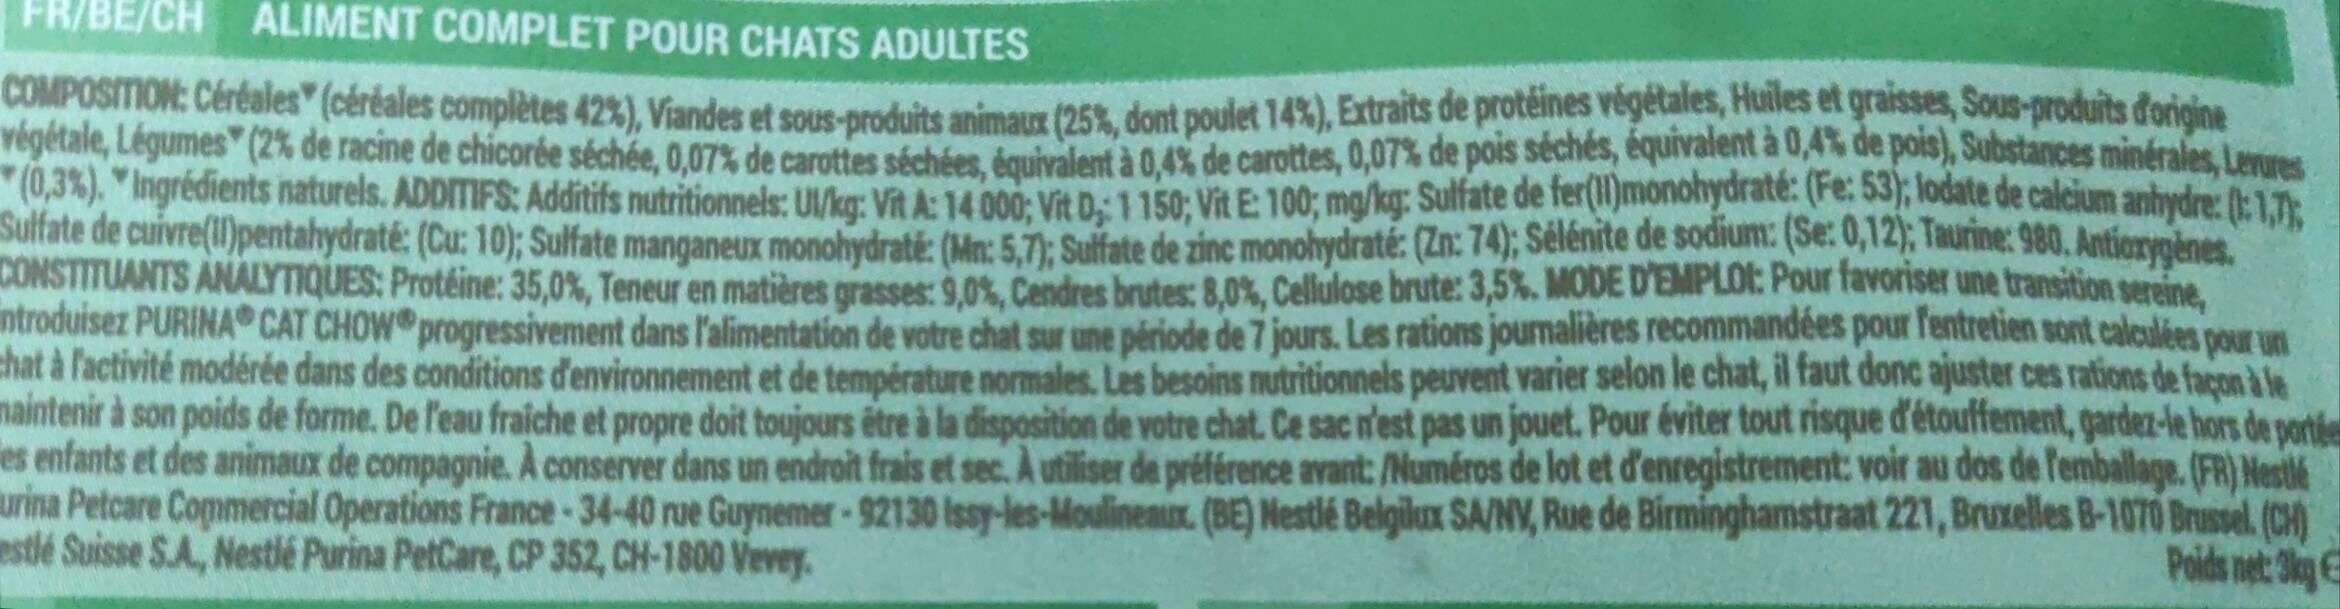 Cat Chow - Croquettes Chat Sterilisé 3KG - Informations nutritionnelles - fr